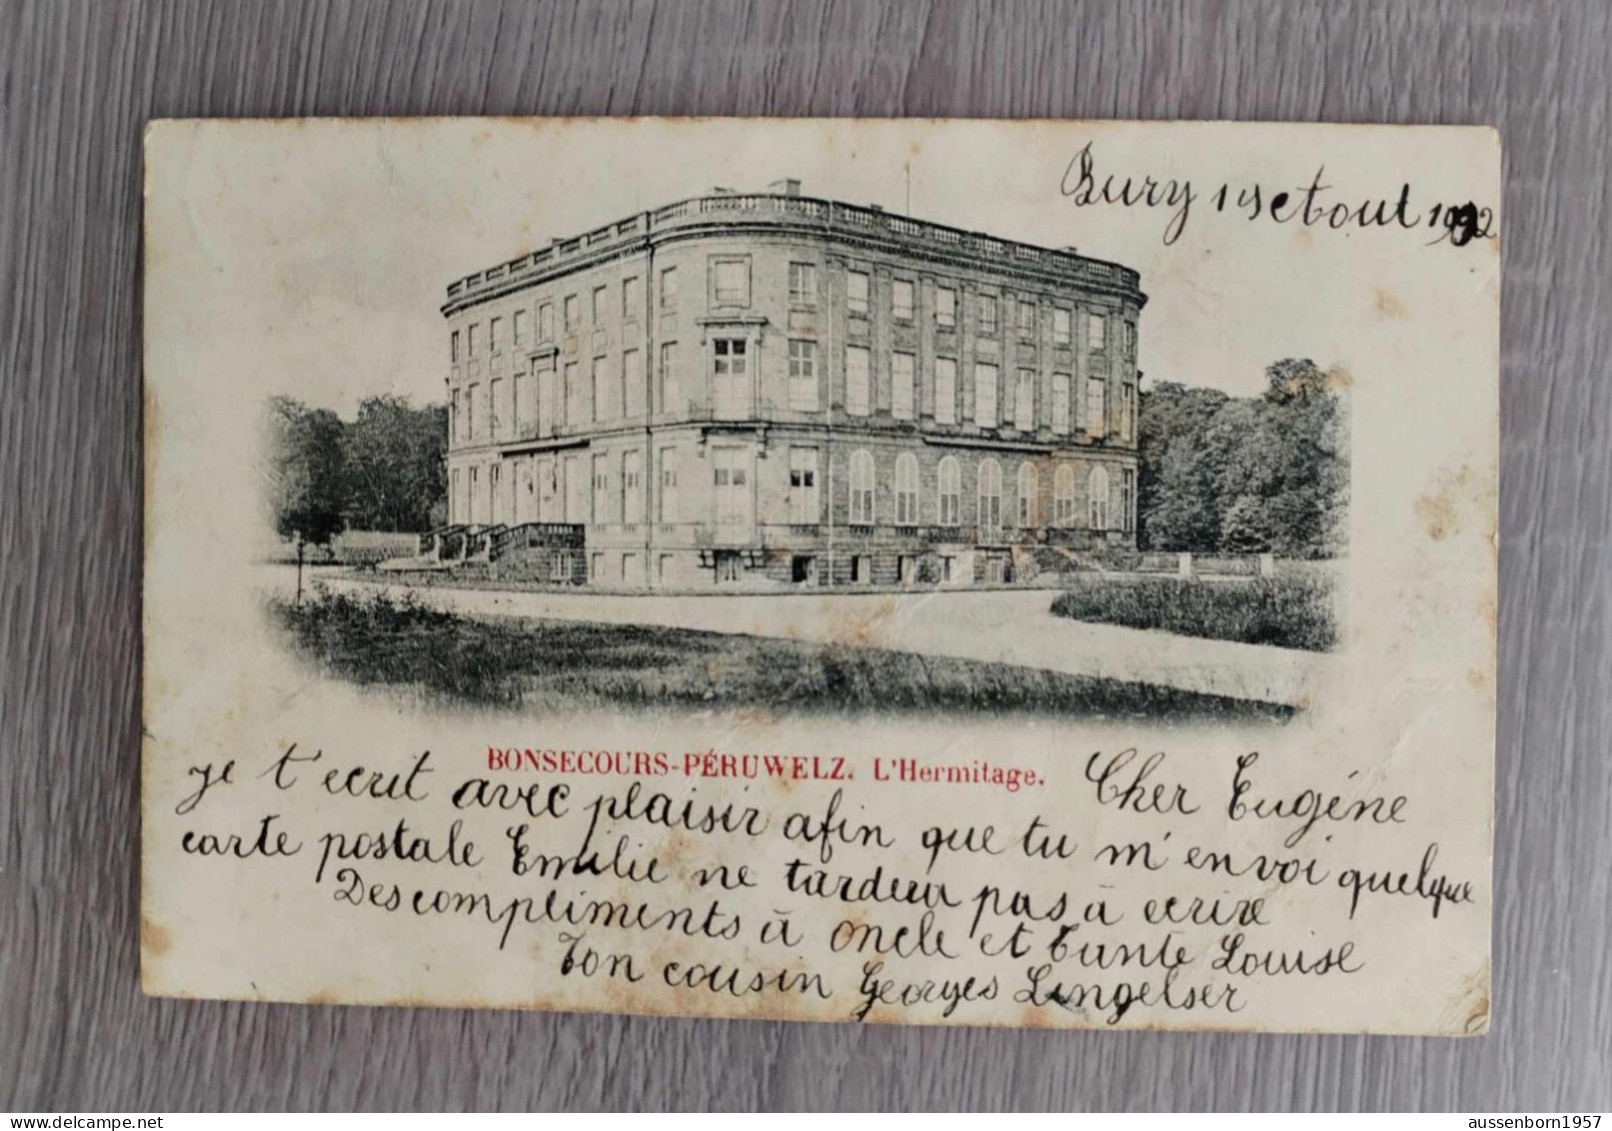 Peruwelz Bonsecours : lot de 7 cartes dos non divisé : 1901, 1902, 1903 et non écrites